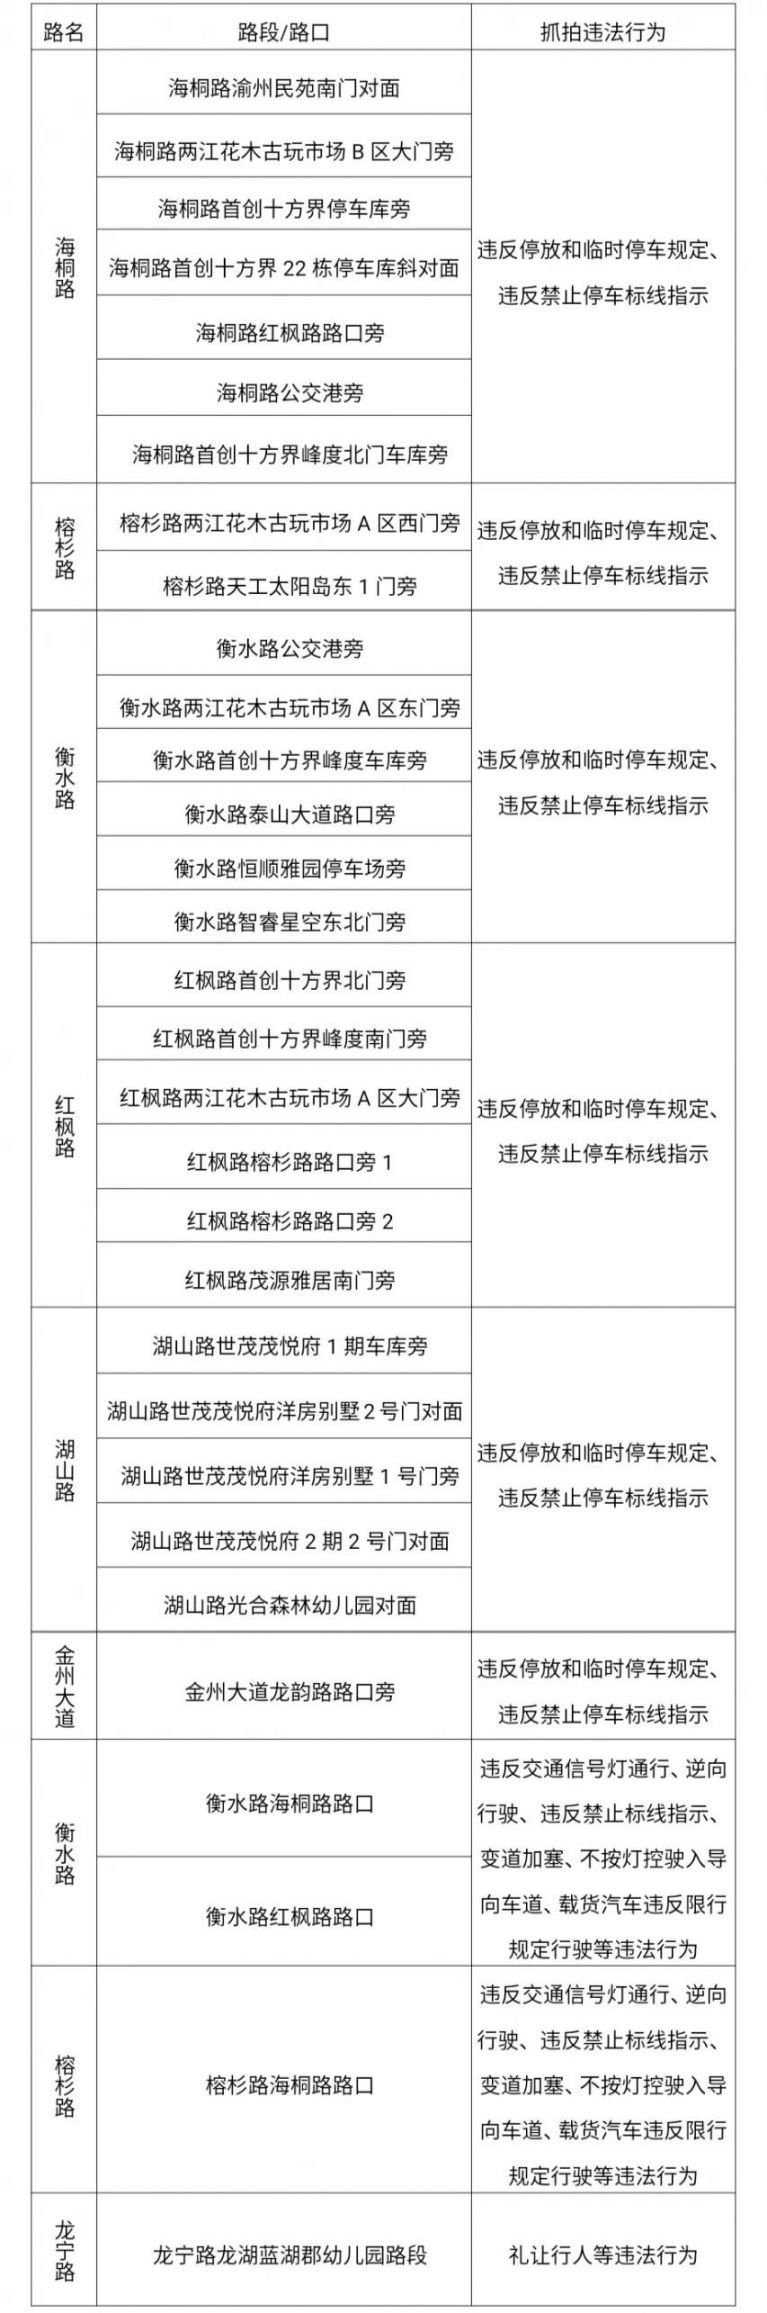 重庆两江新区新增31处抓拍交通违法行为地点